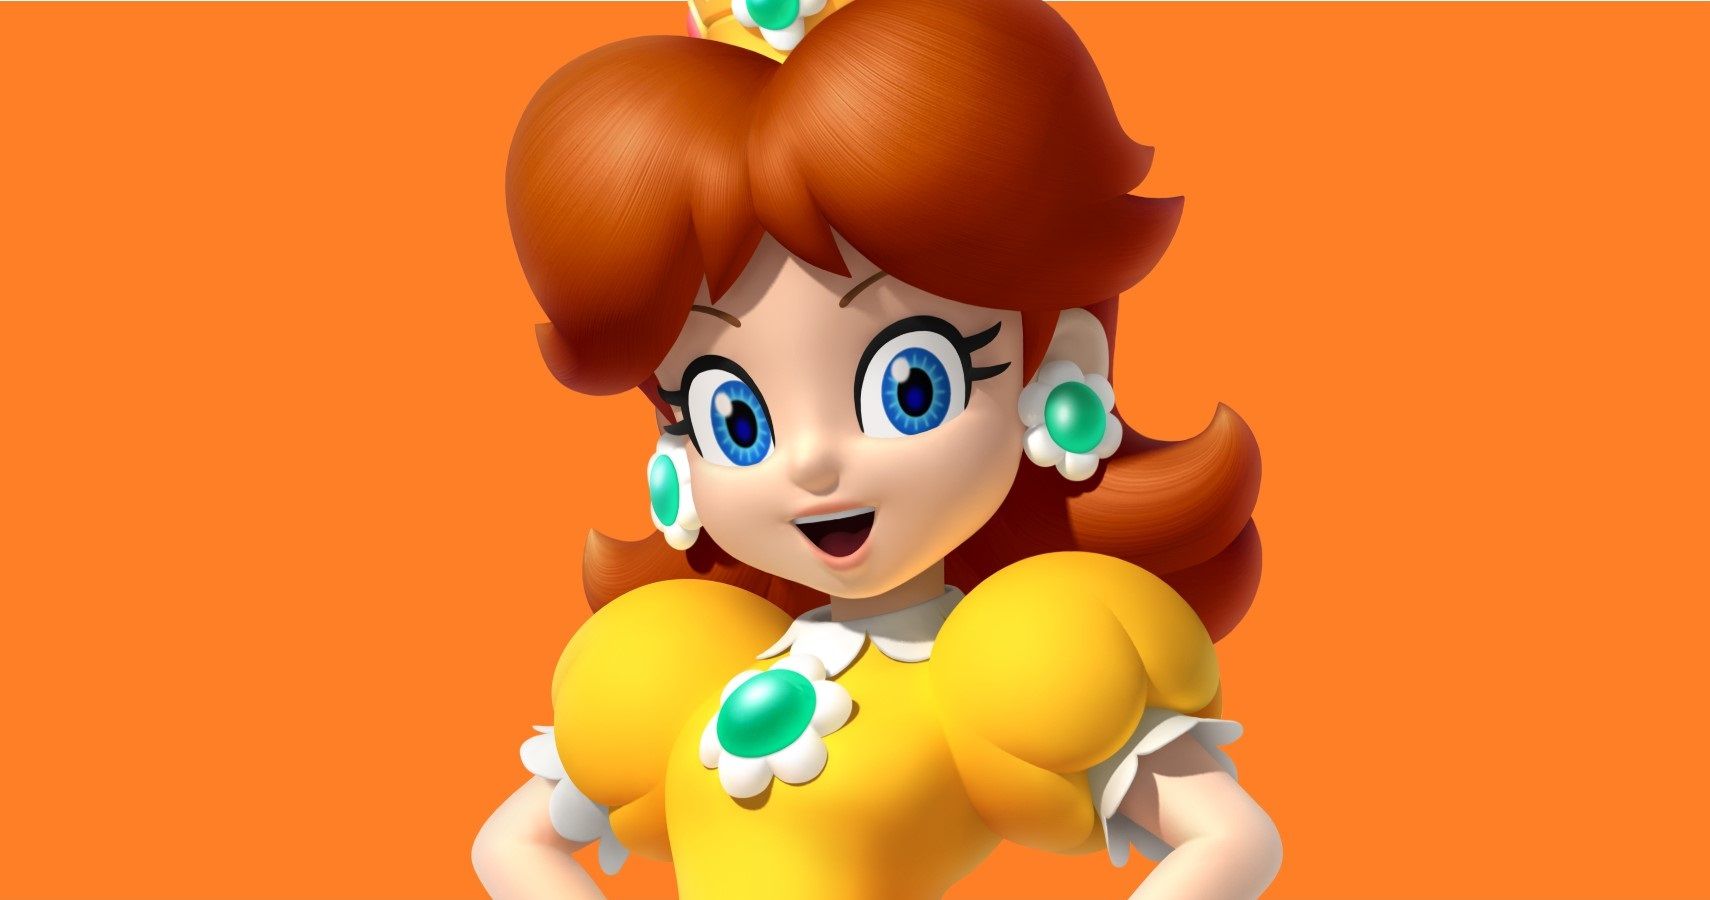 Princess Daisy from Mario